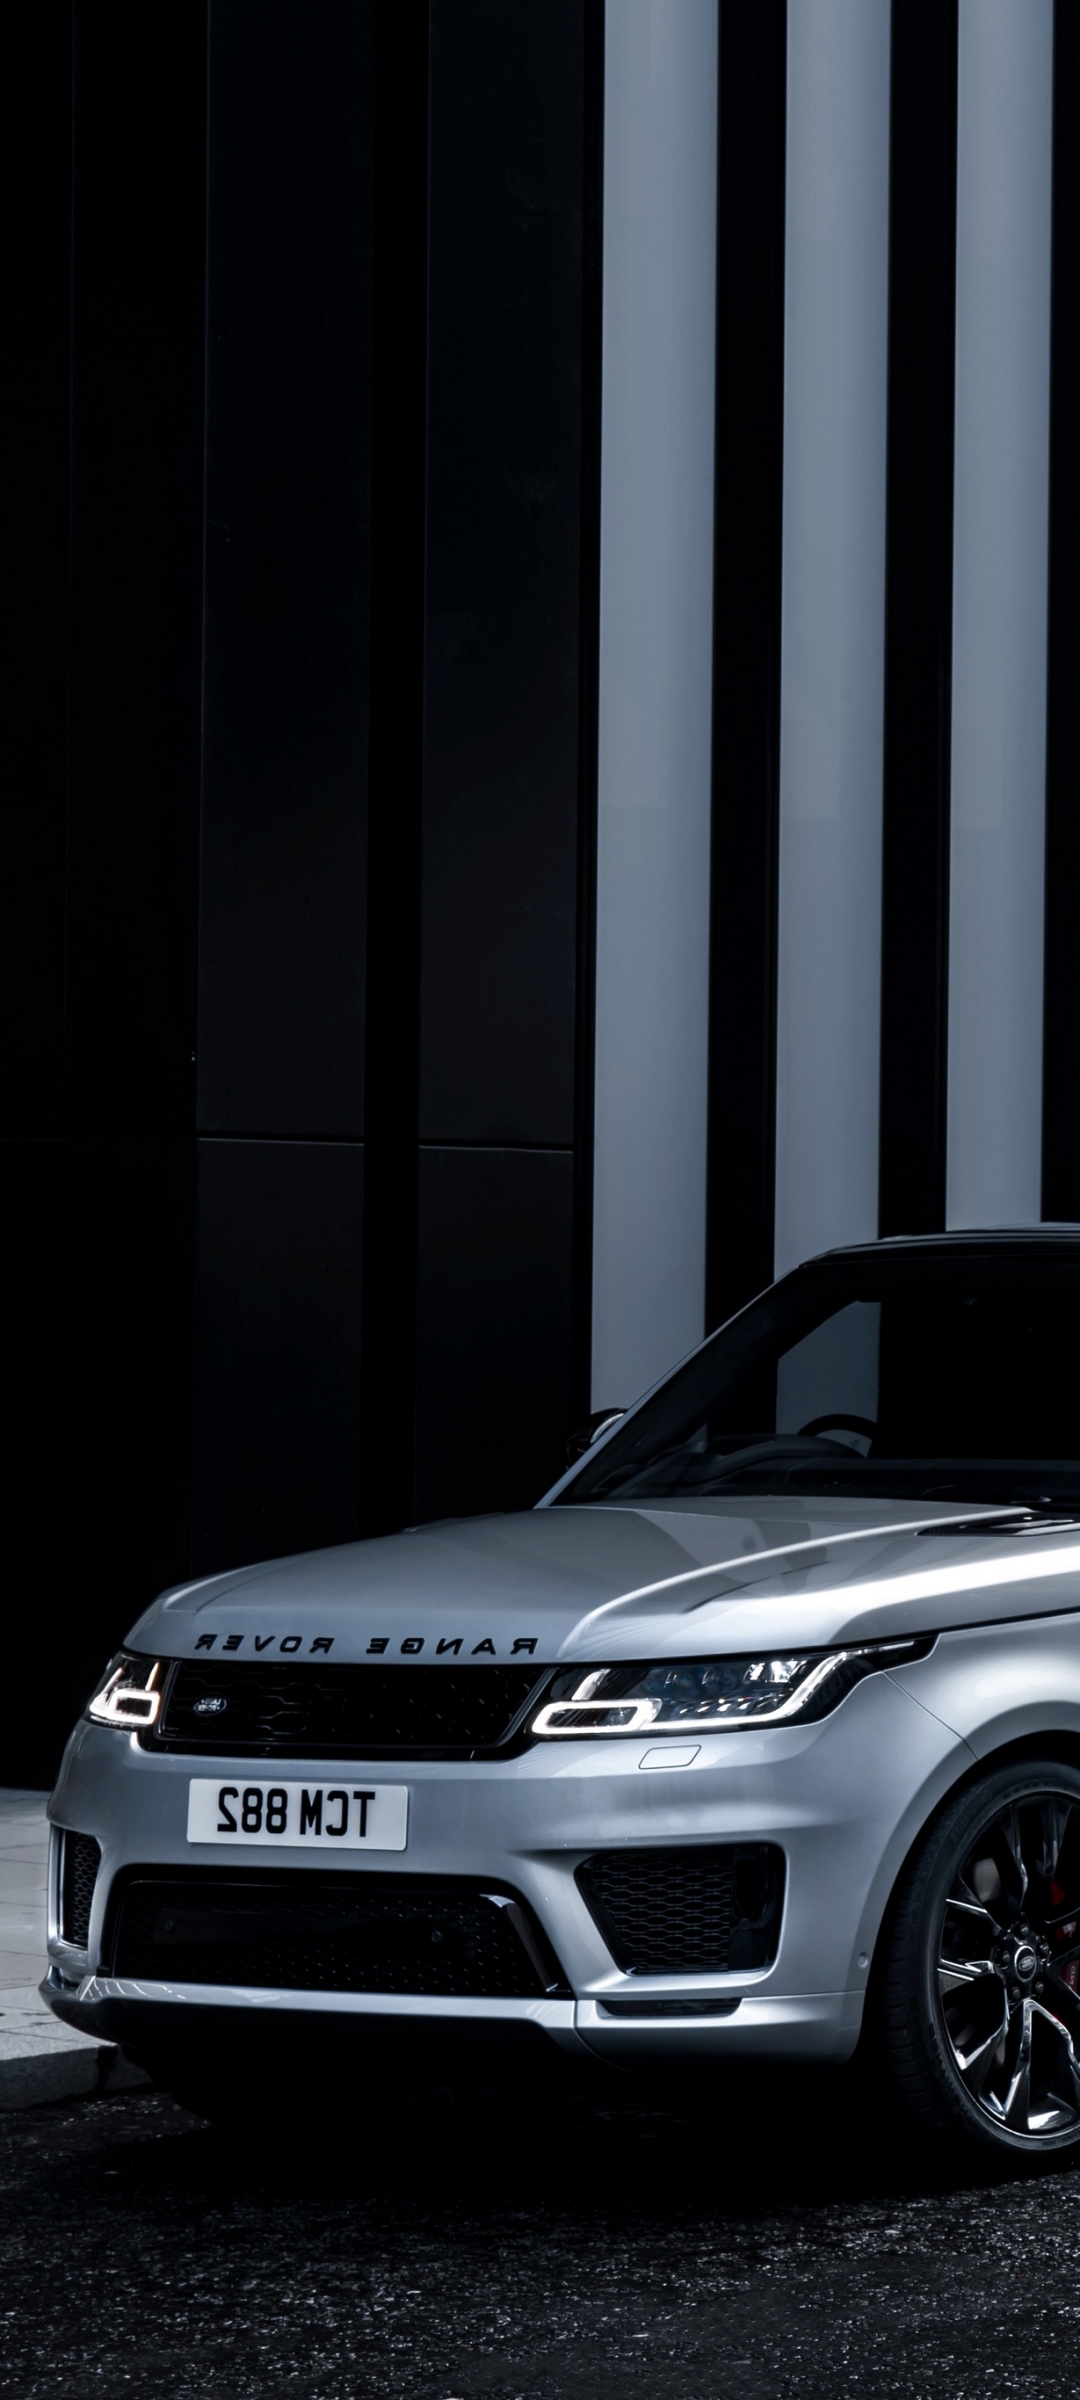 Descarga gratuita de fondo de pantalla para móvil de Land Rover, Coche, Todoterreno, Vehículos, Coche De Plata, Rango Rover, Gama Rover Deporte.